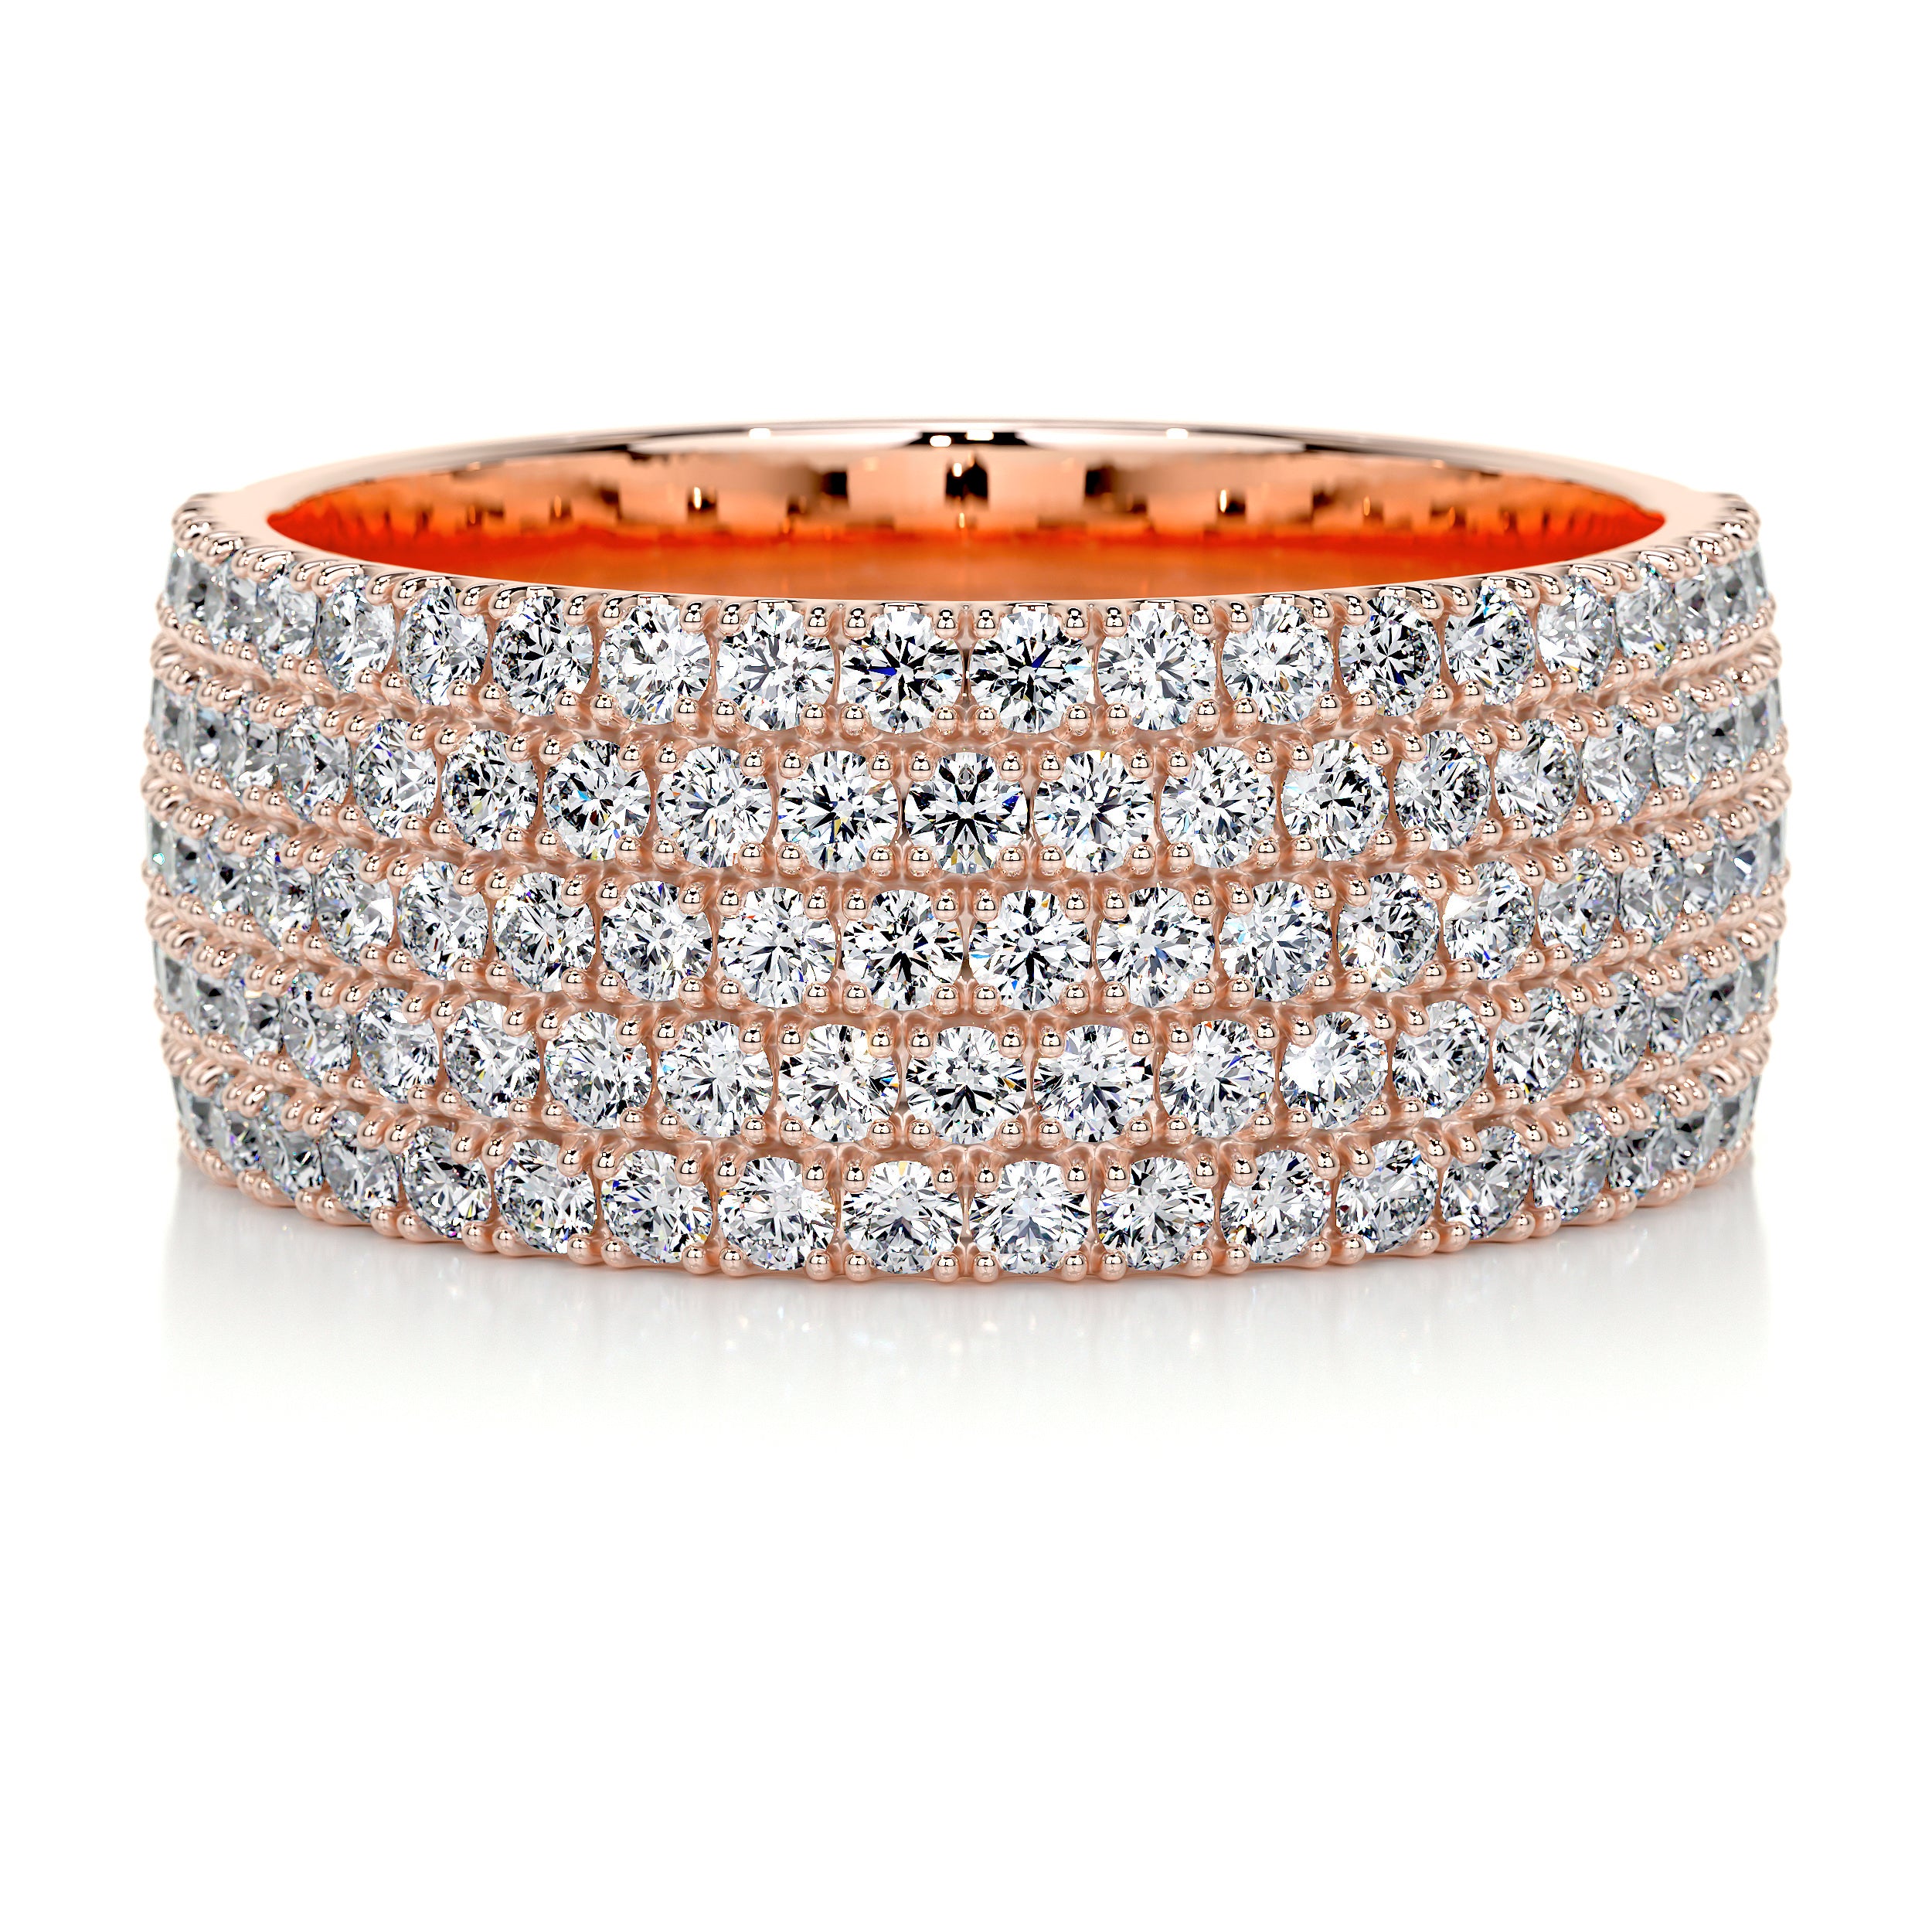 Dakota Diamond Wedding Ring   (1.2 Carat) -14K Rose Gold